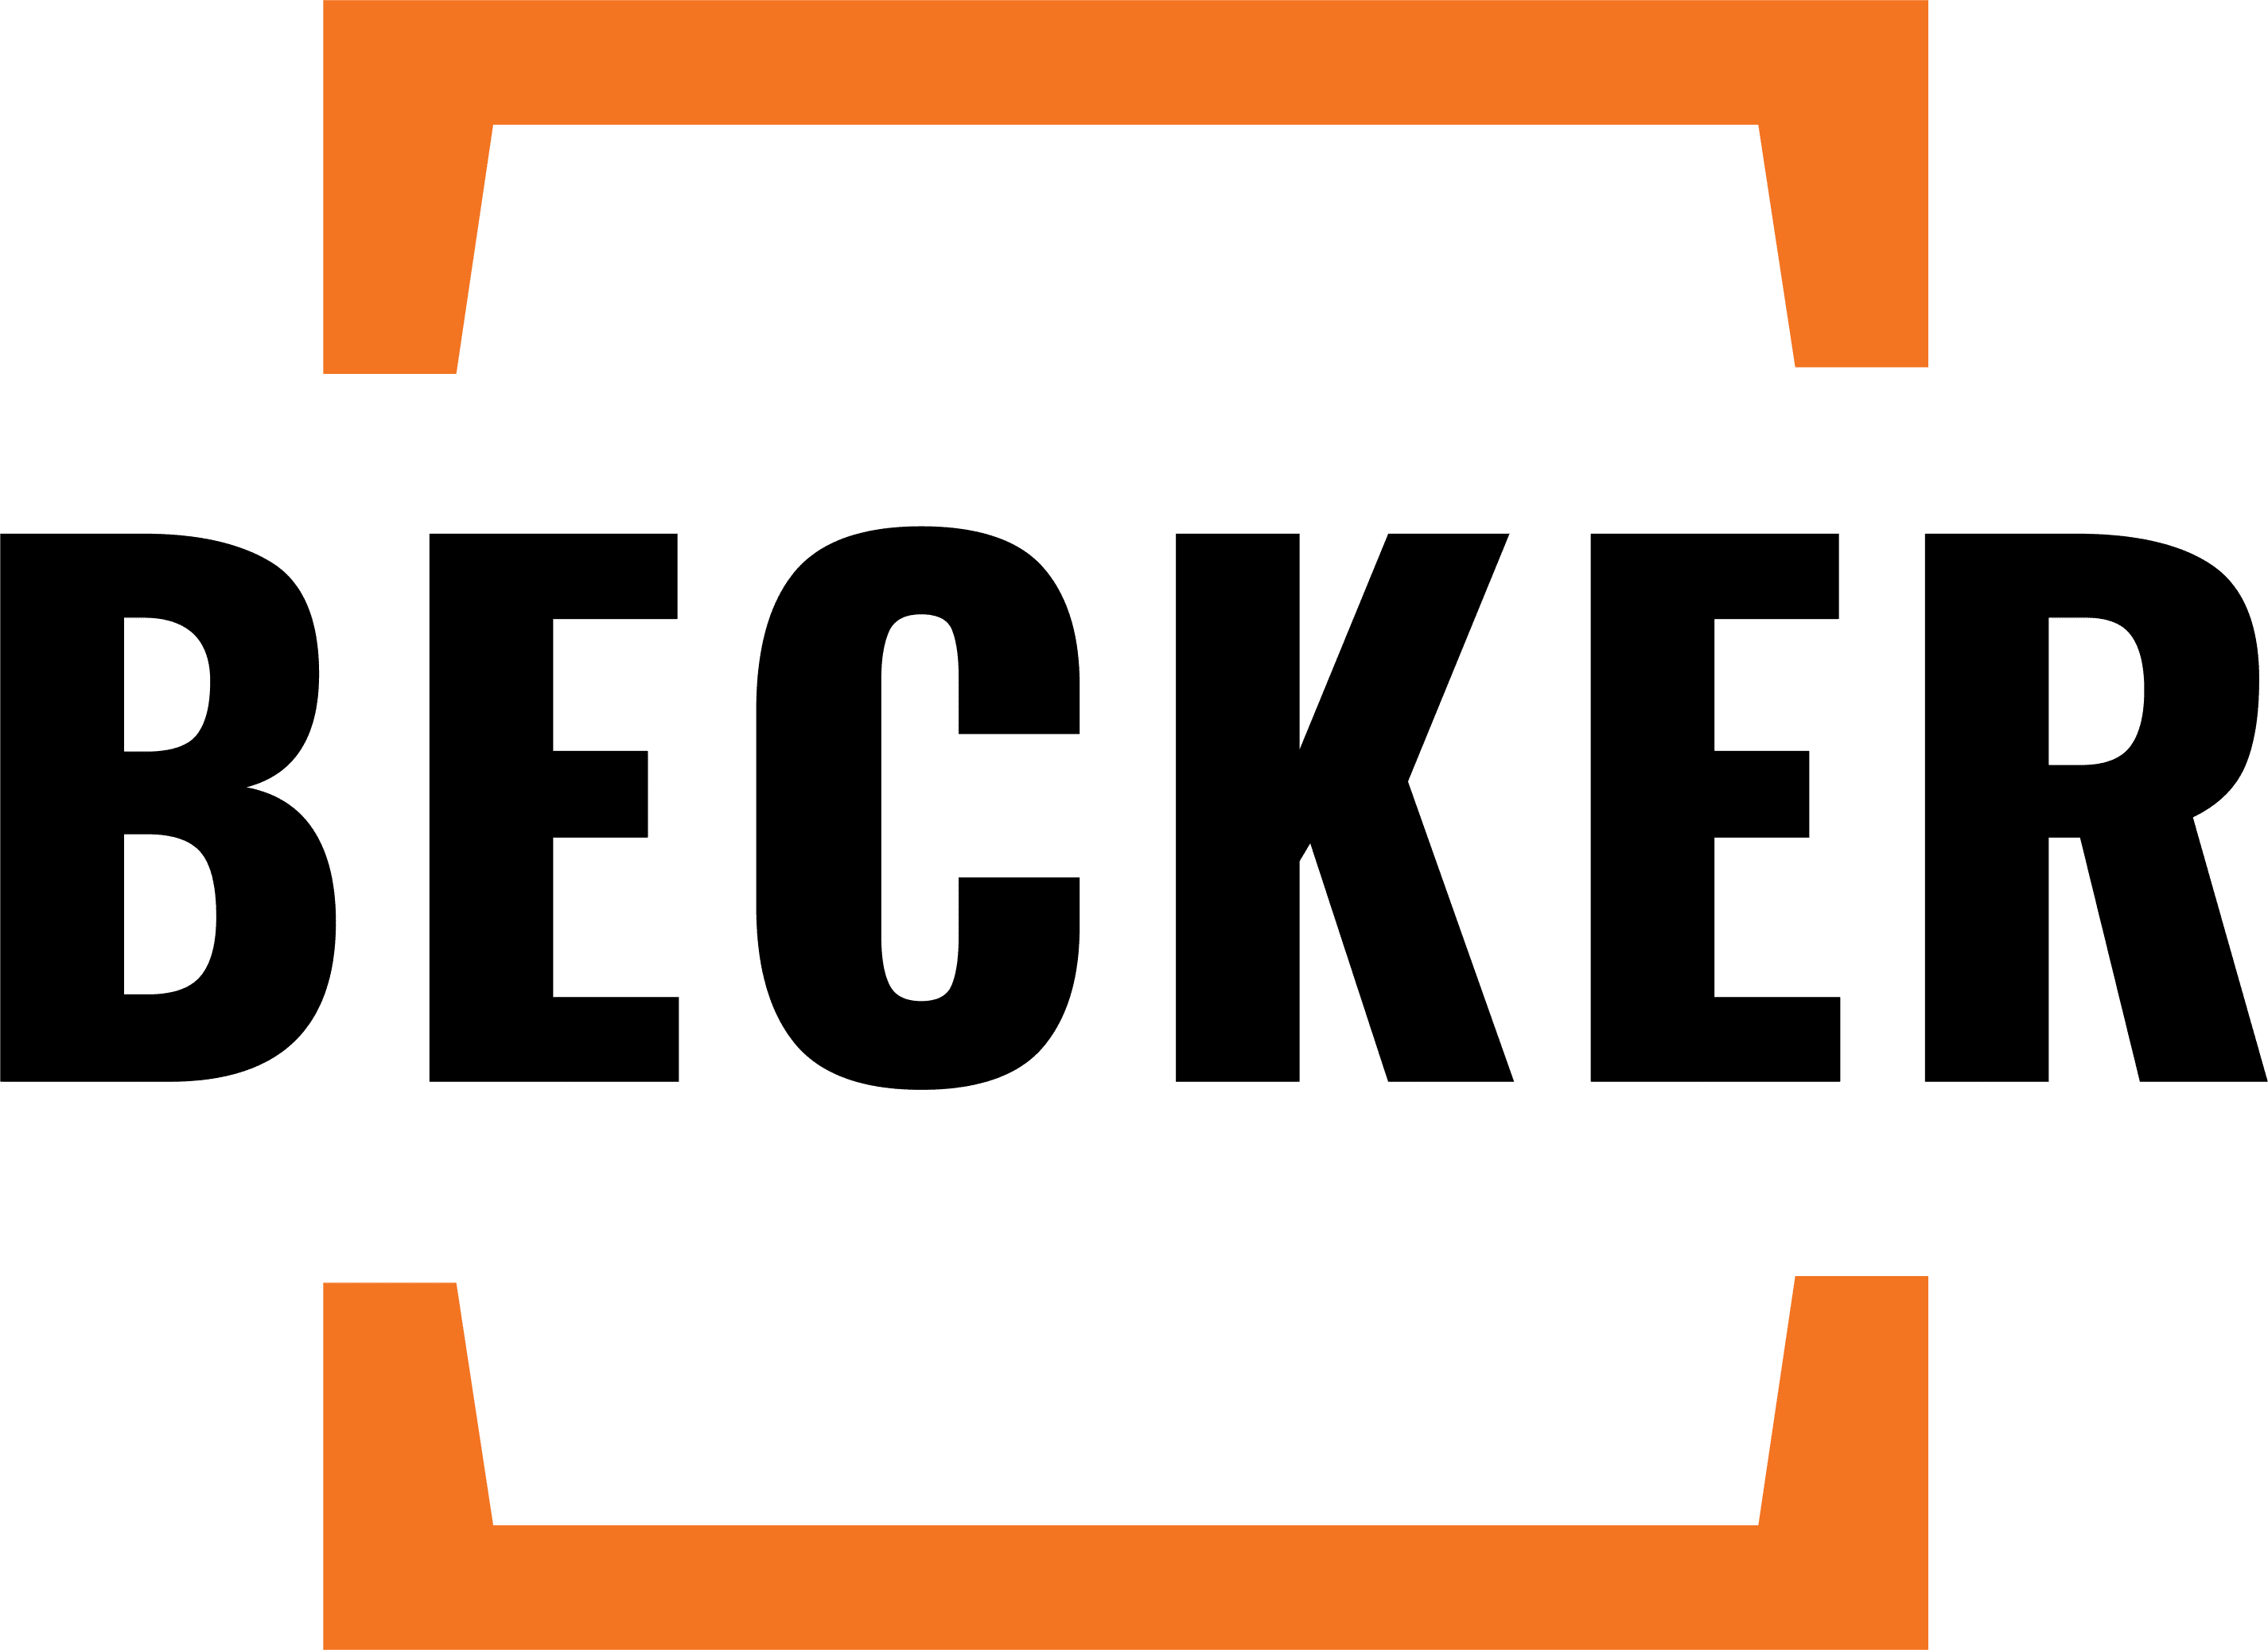 Becker Media